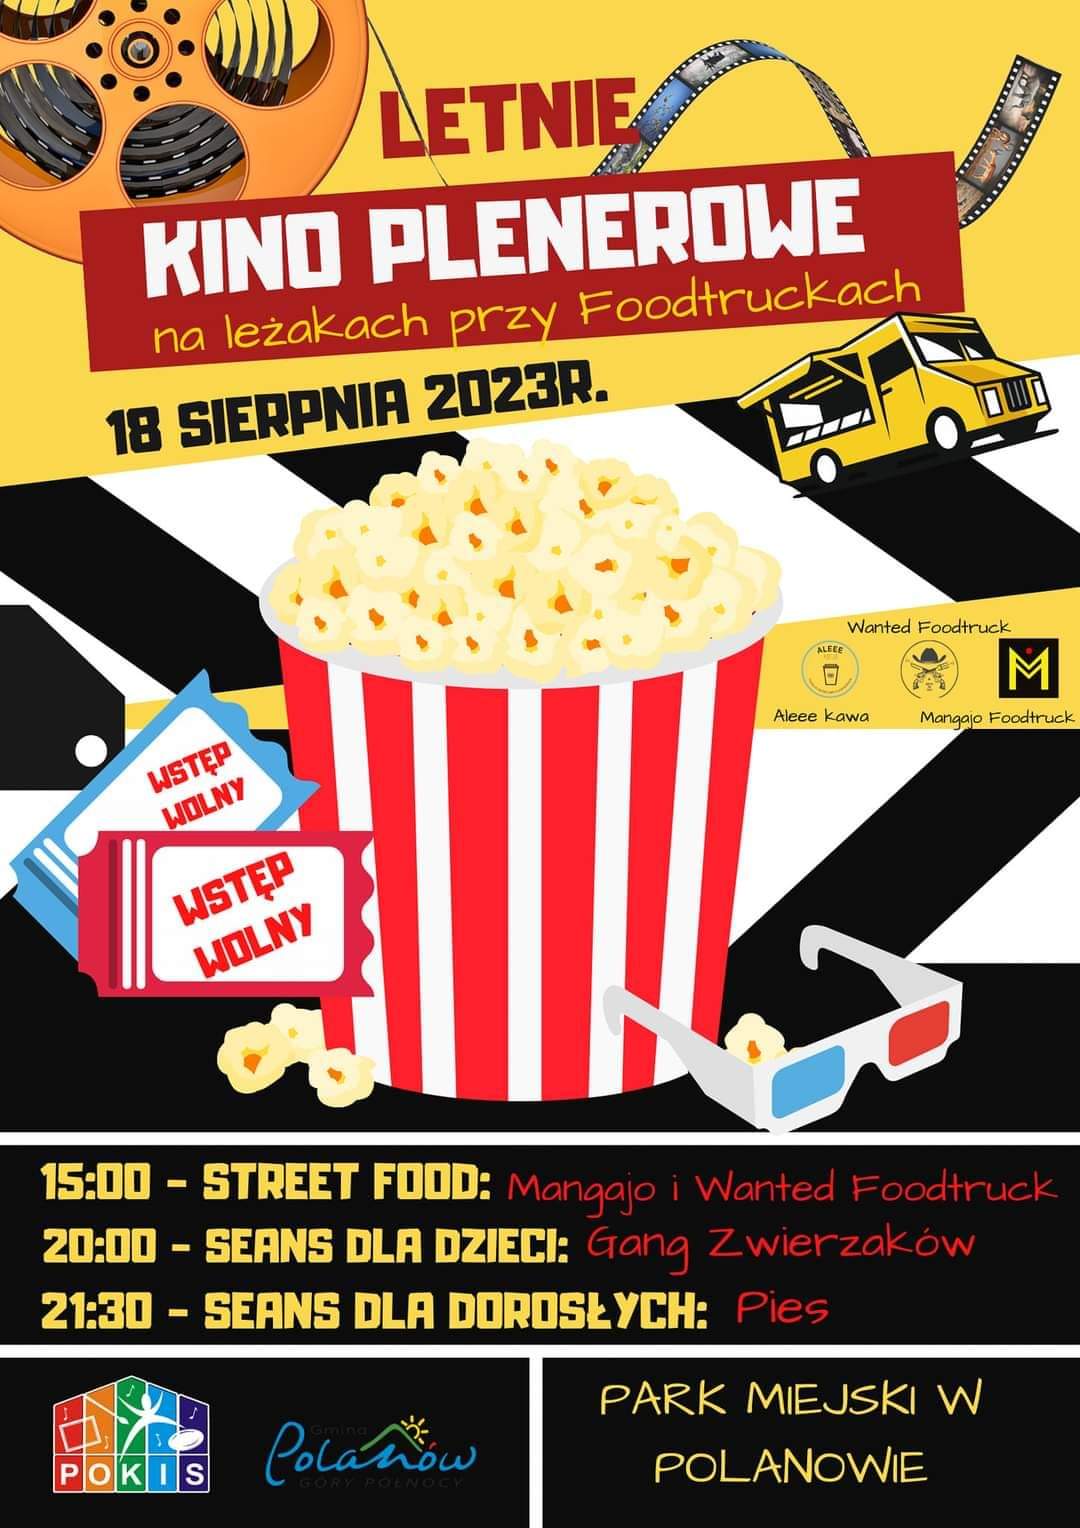 Plakat z zaproszeniem na letnie kino plenerowe w Polanowie 18 sierpnia 2023